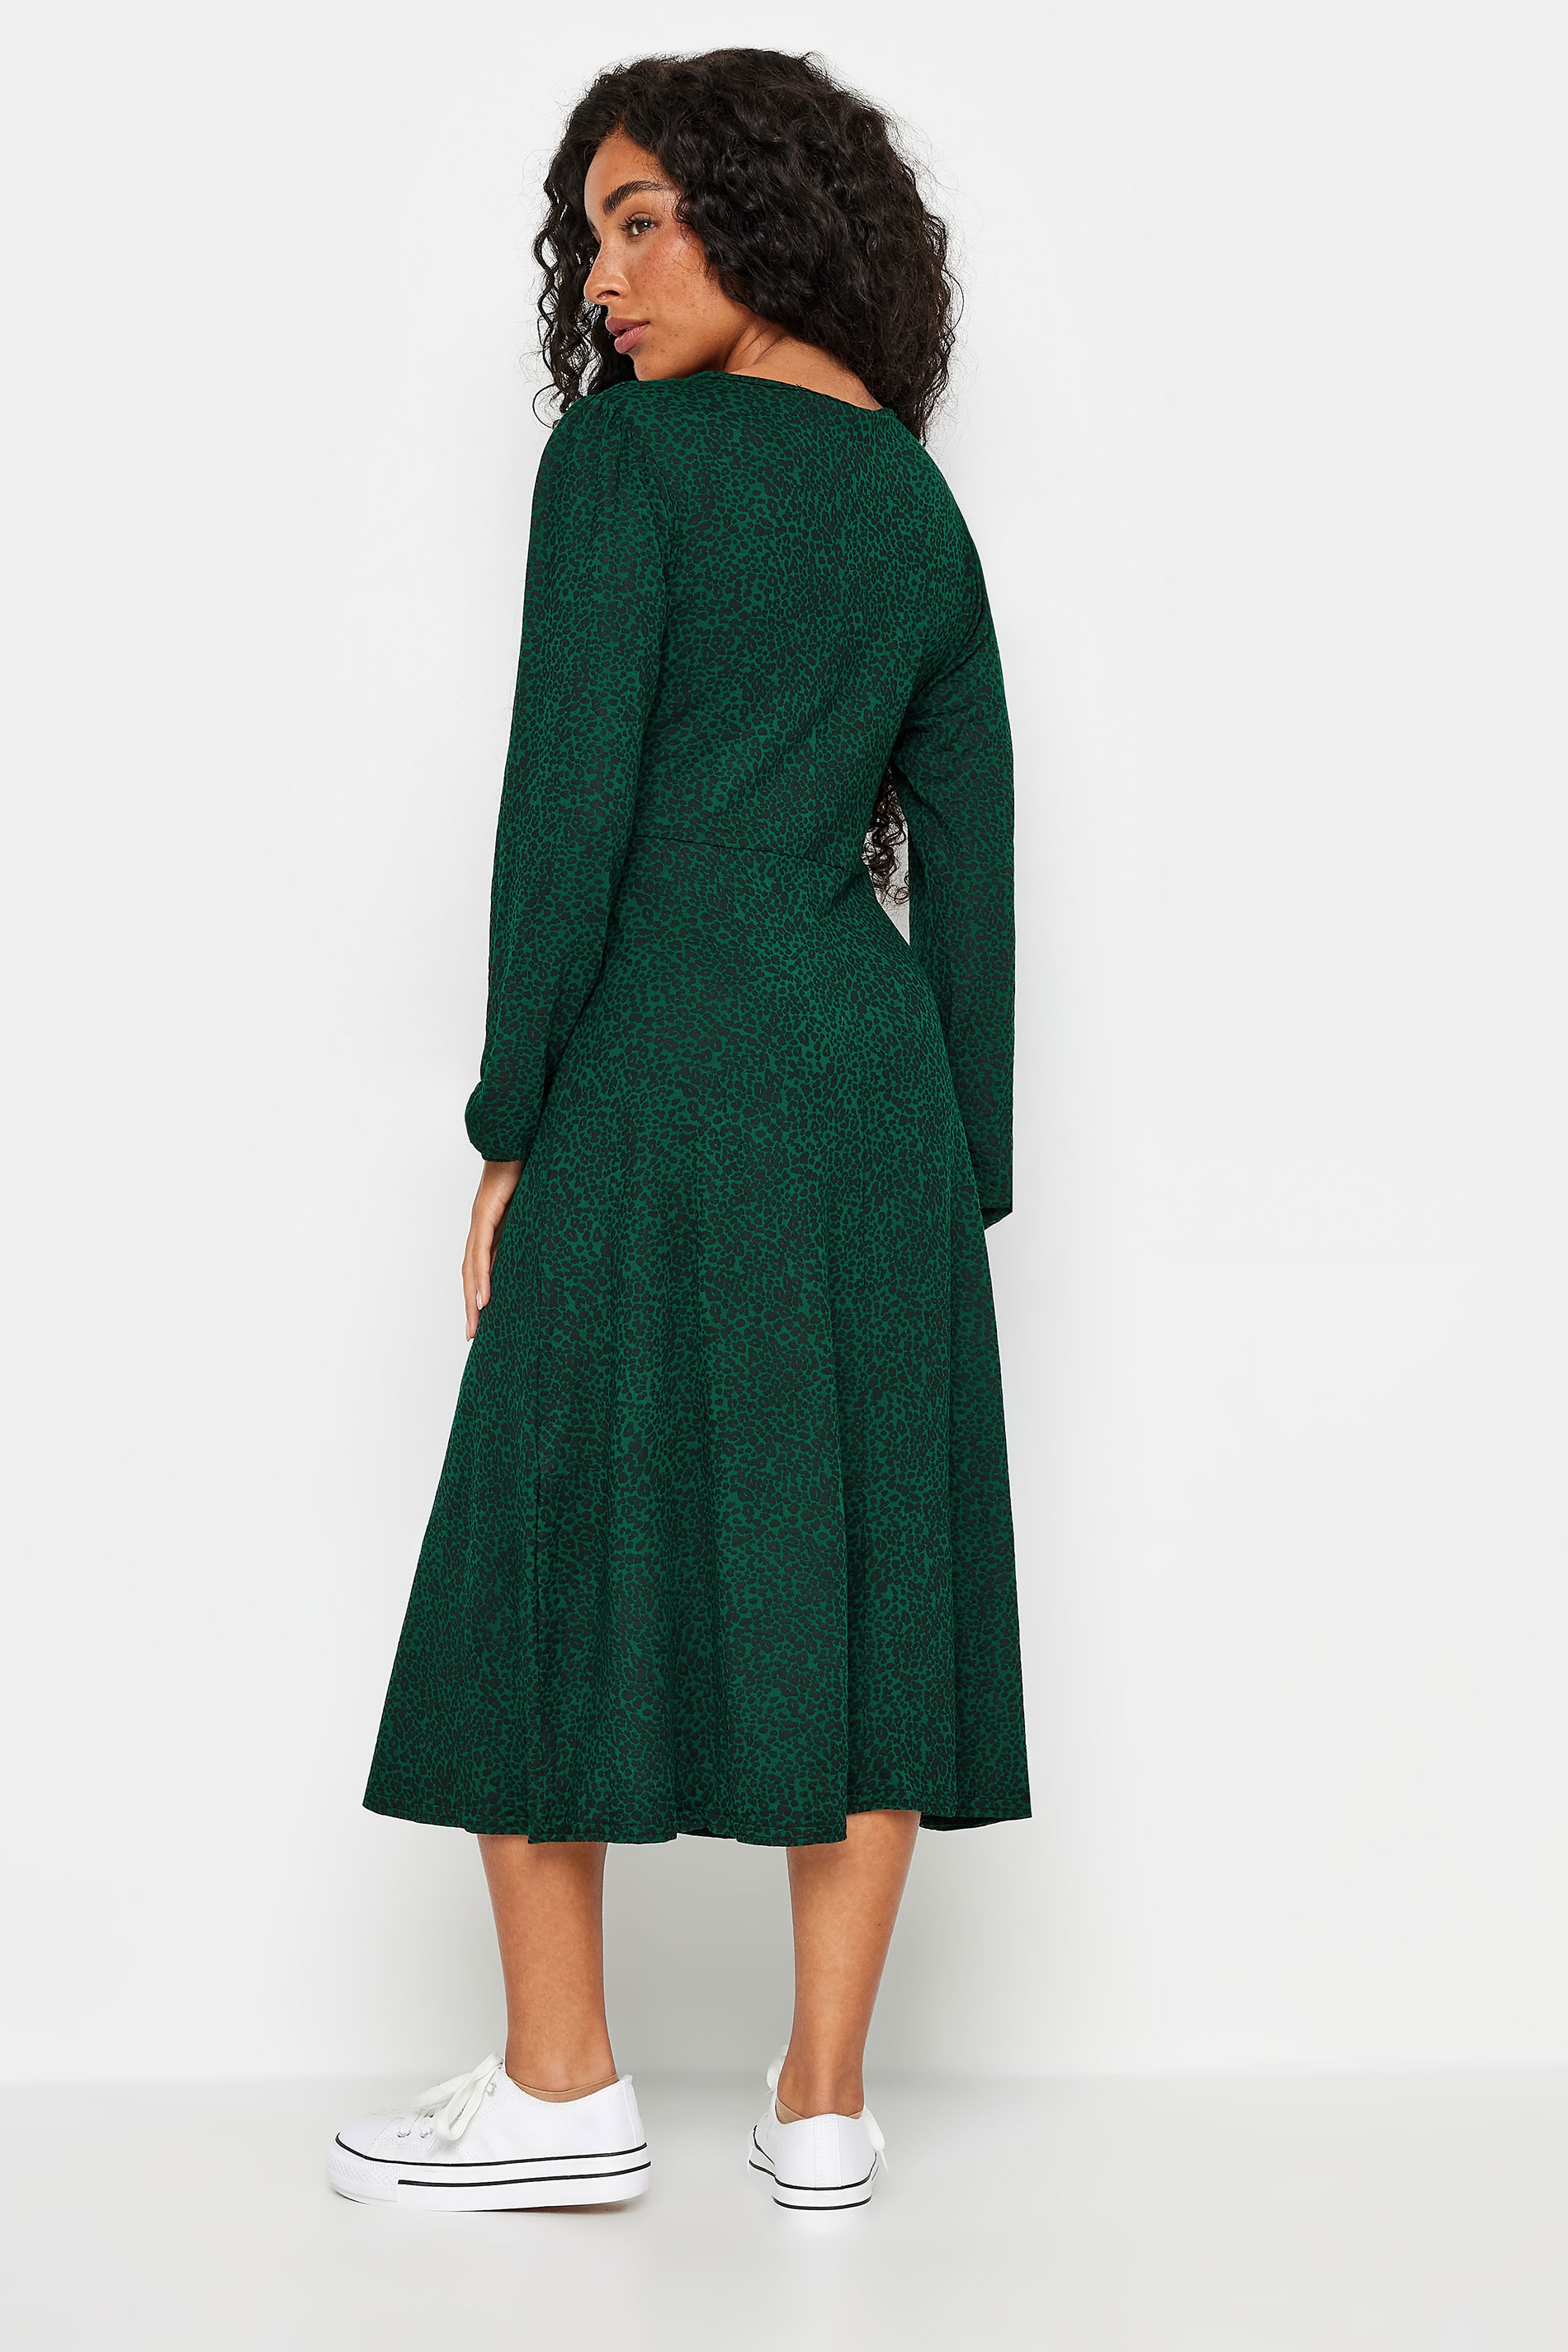 M&Co Petite Dark Green Leopard Print Midi Dress | M&Co 3